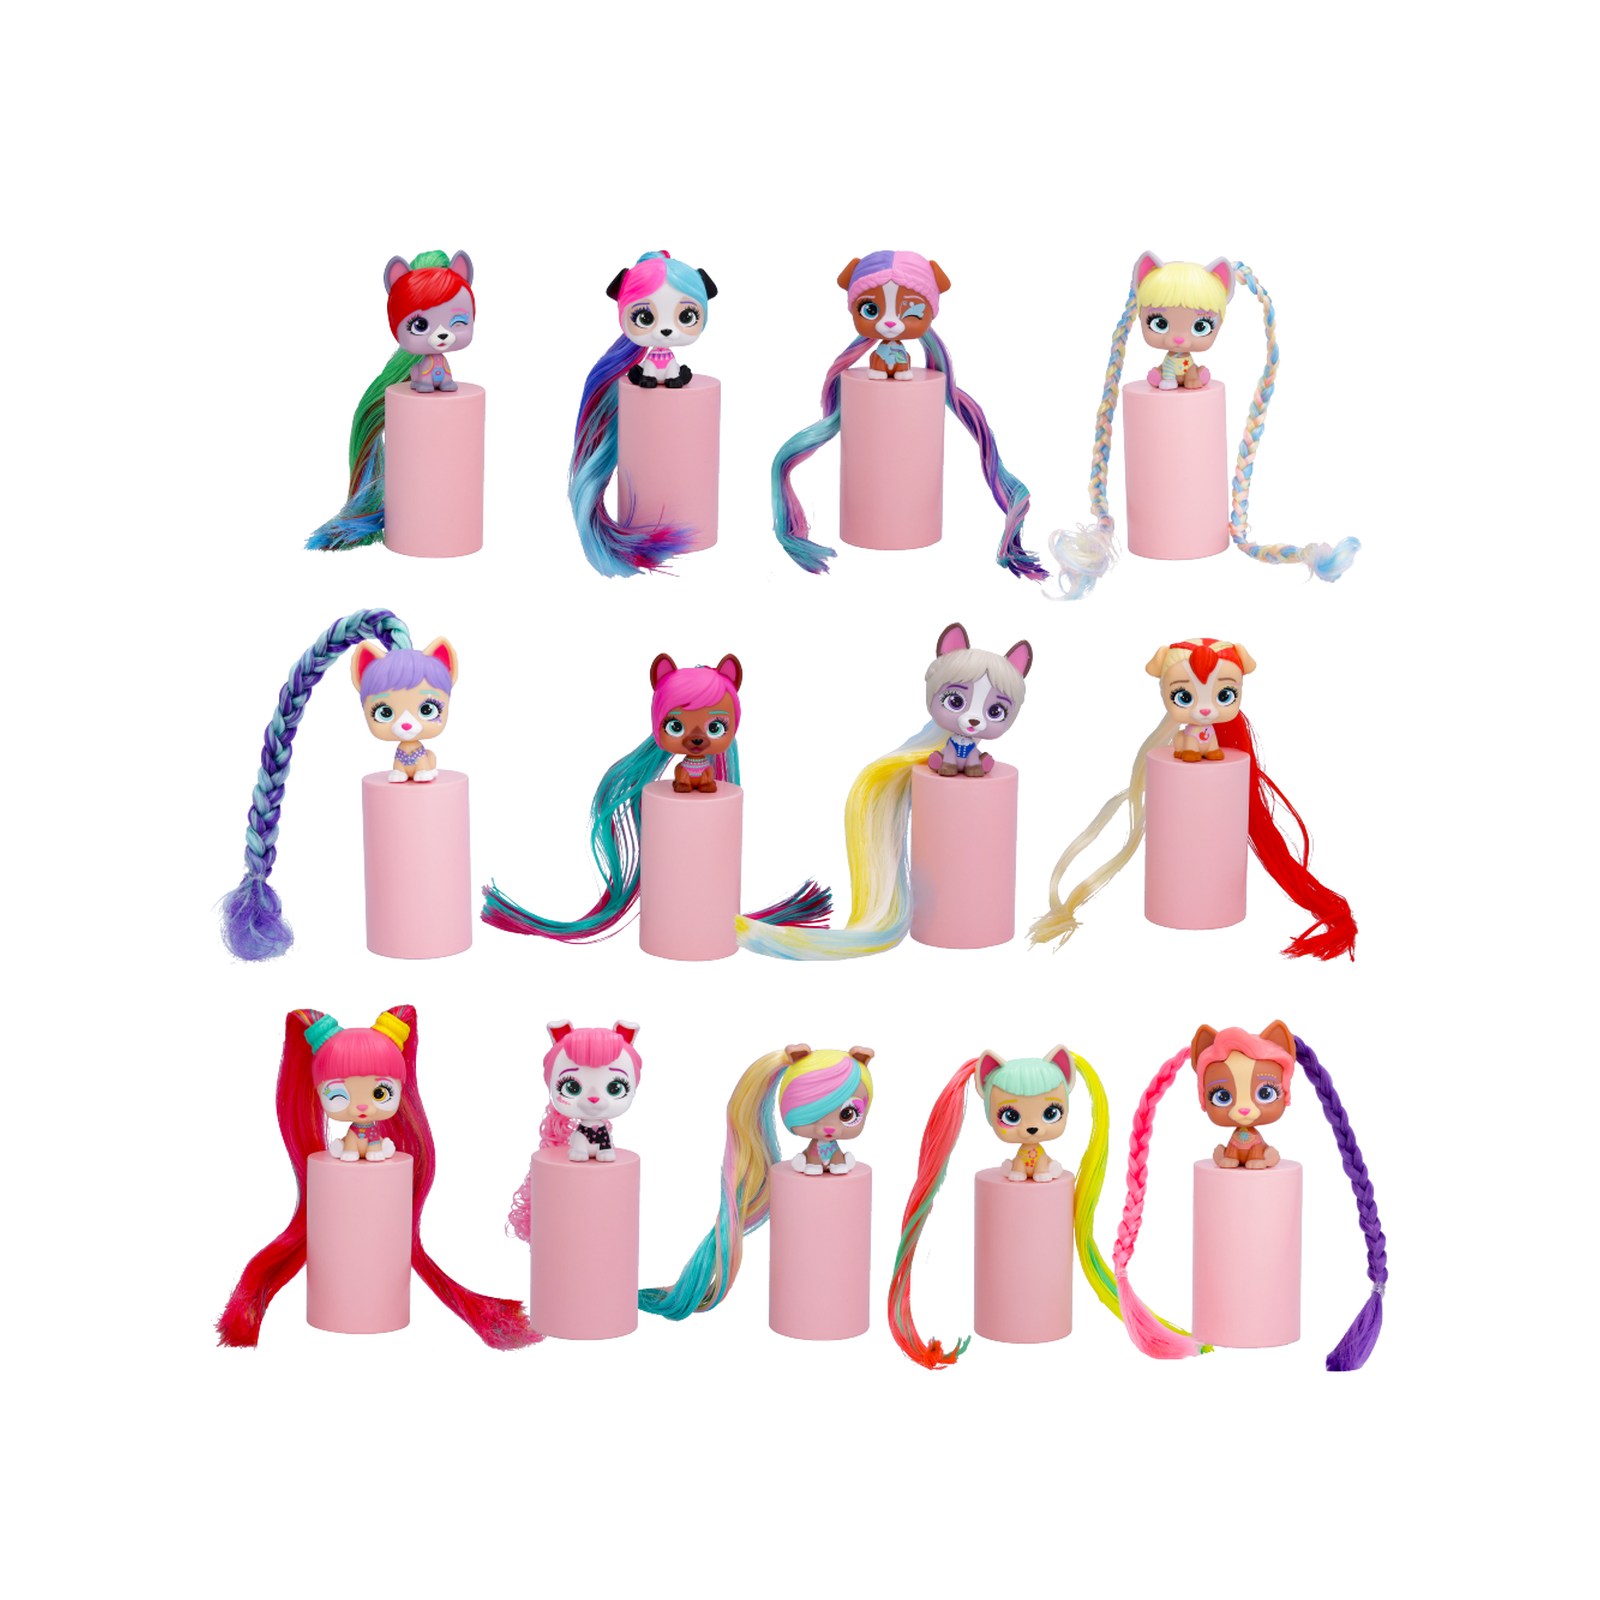 Vip pets mini fans glam gems 13 mini bambole cagnoline con capelli lunghi e 3 accessori per acconciare; ideali per  bambini e bambini tra i 4 e gli 8 anni - VIP PETS